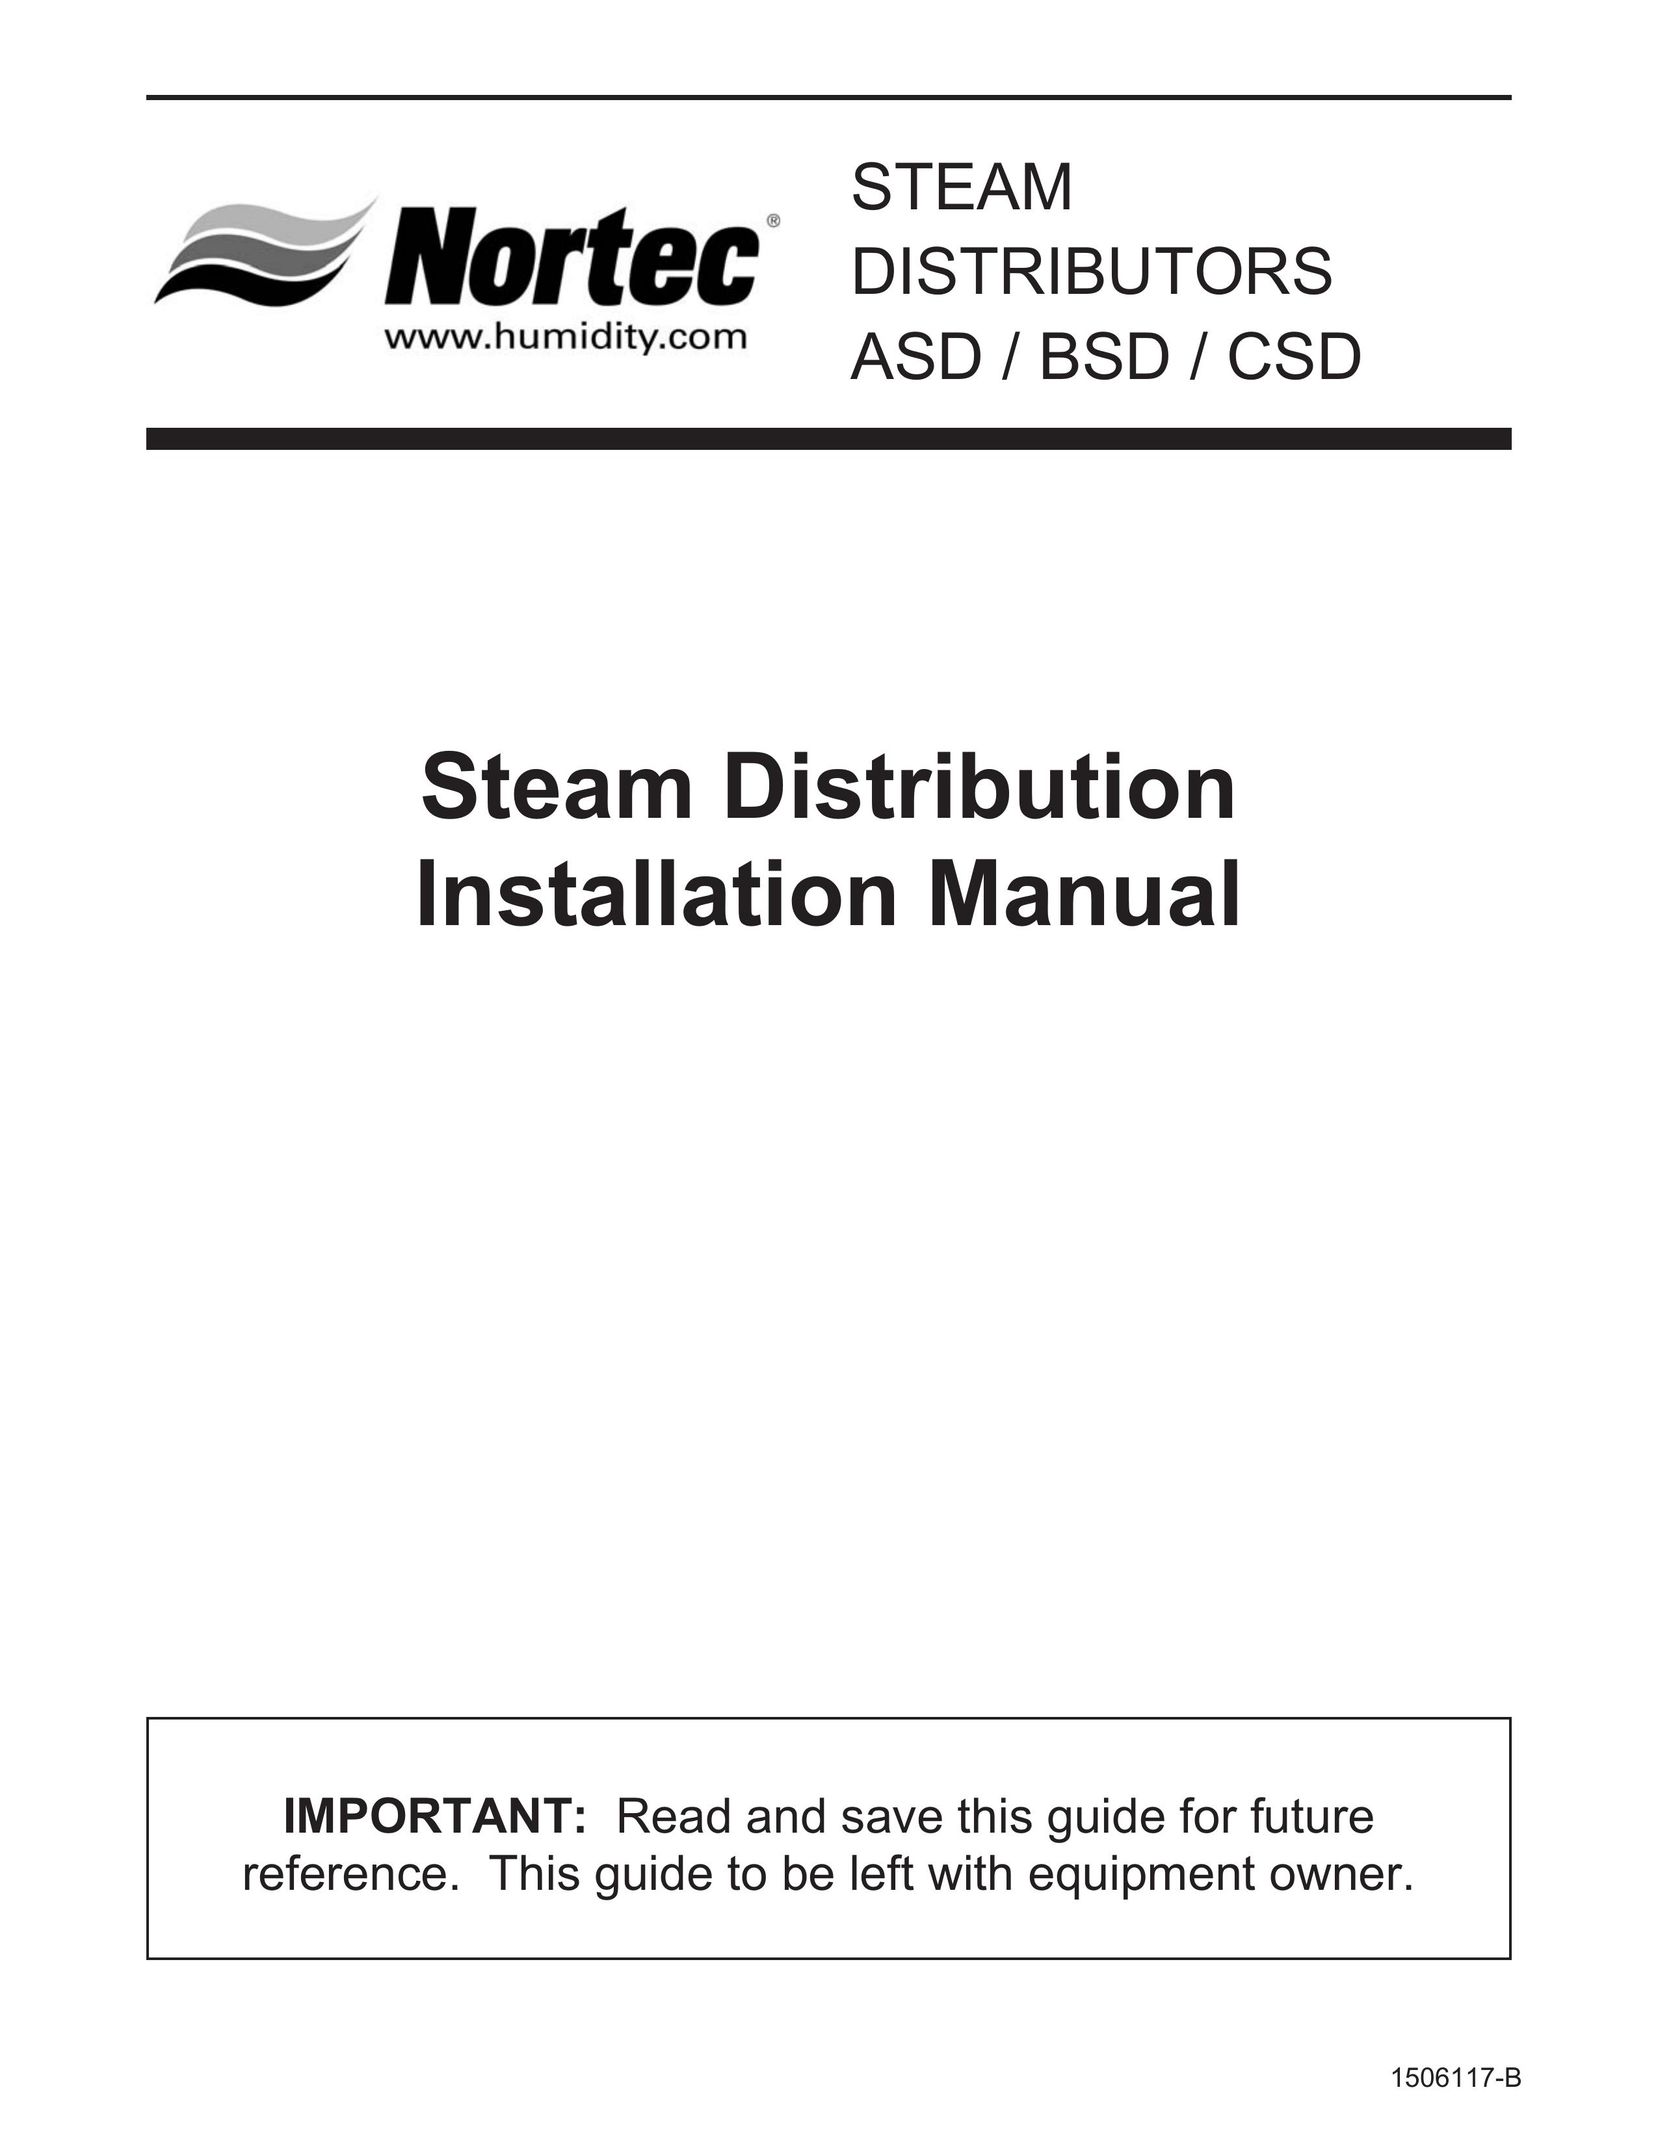 Nortec ASD Humidifier User Manual